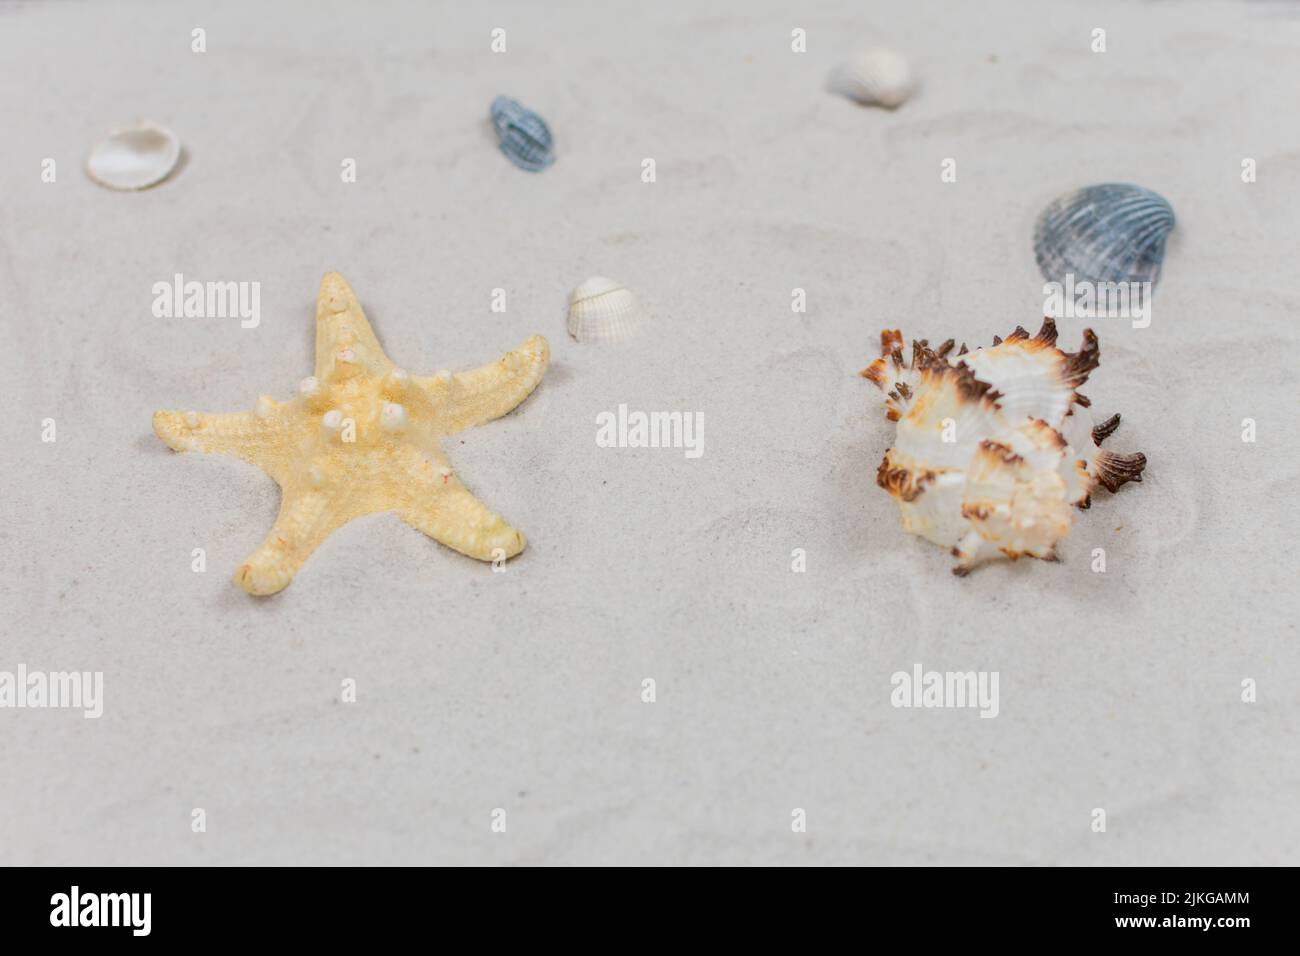 Starfish et coquillages sur le sable. Concept de la mer. Accent sélectif sur les coquillages et le sable. Place pour une inscription. Vue de dessus. Banque D'Images